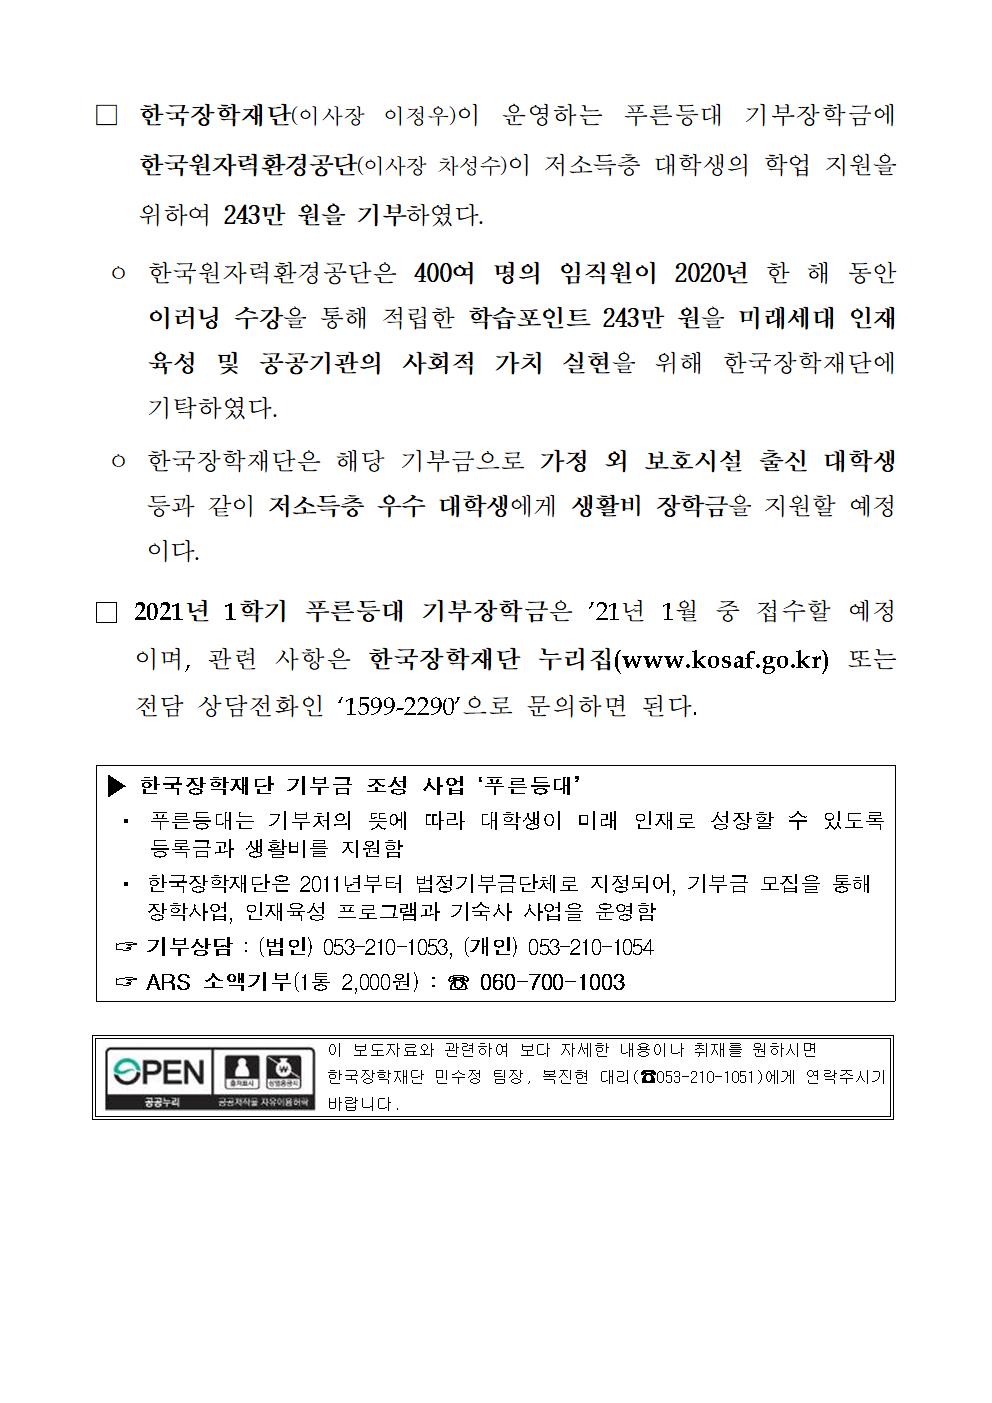 12-31(목)[보도자료] 한국장학재단 푸른등대 기부장학금에 한국원자력환경공단 243만 원 기부002.jpg